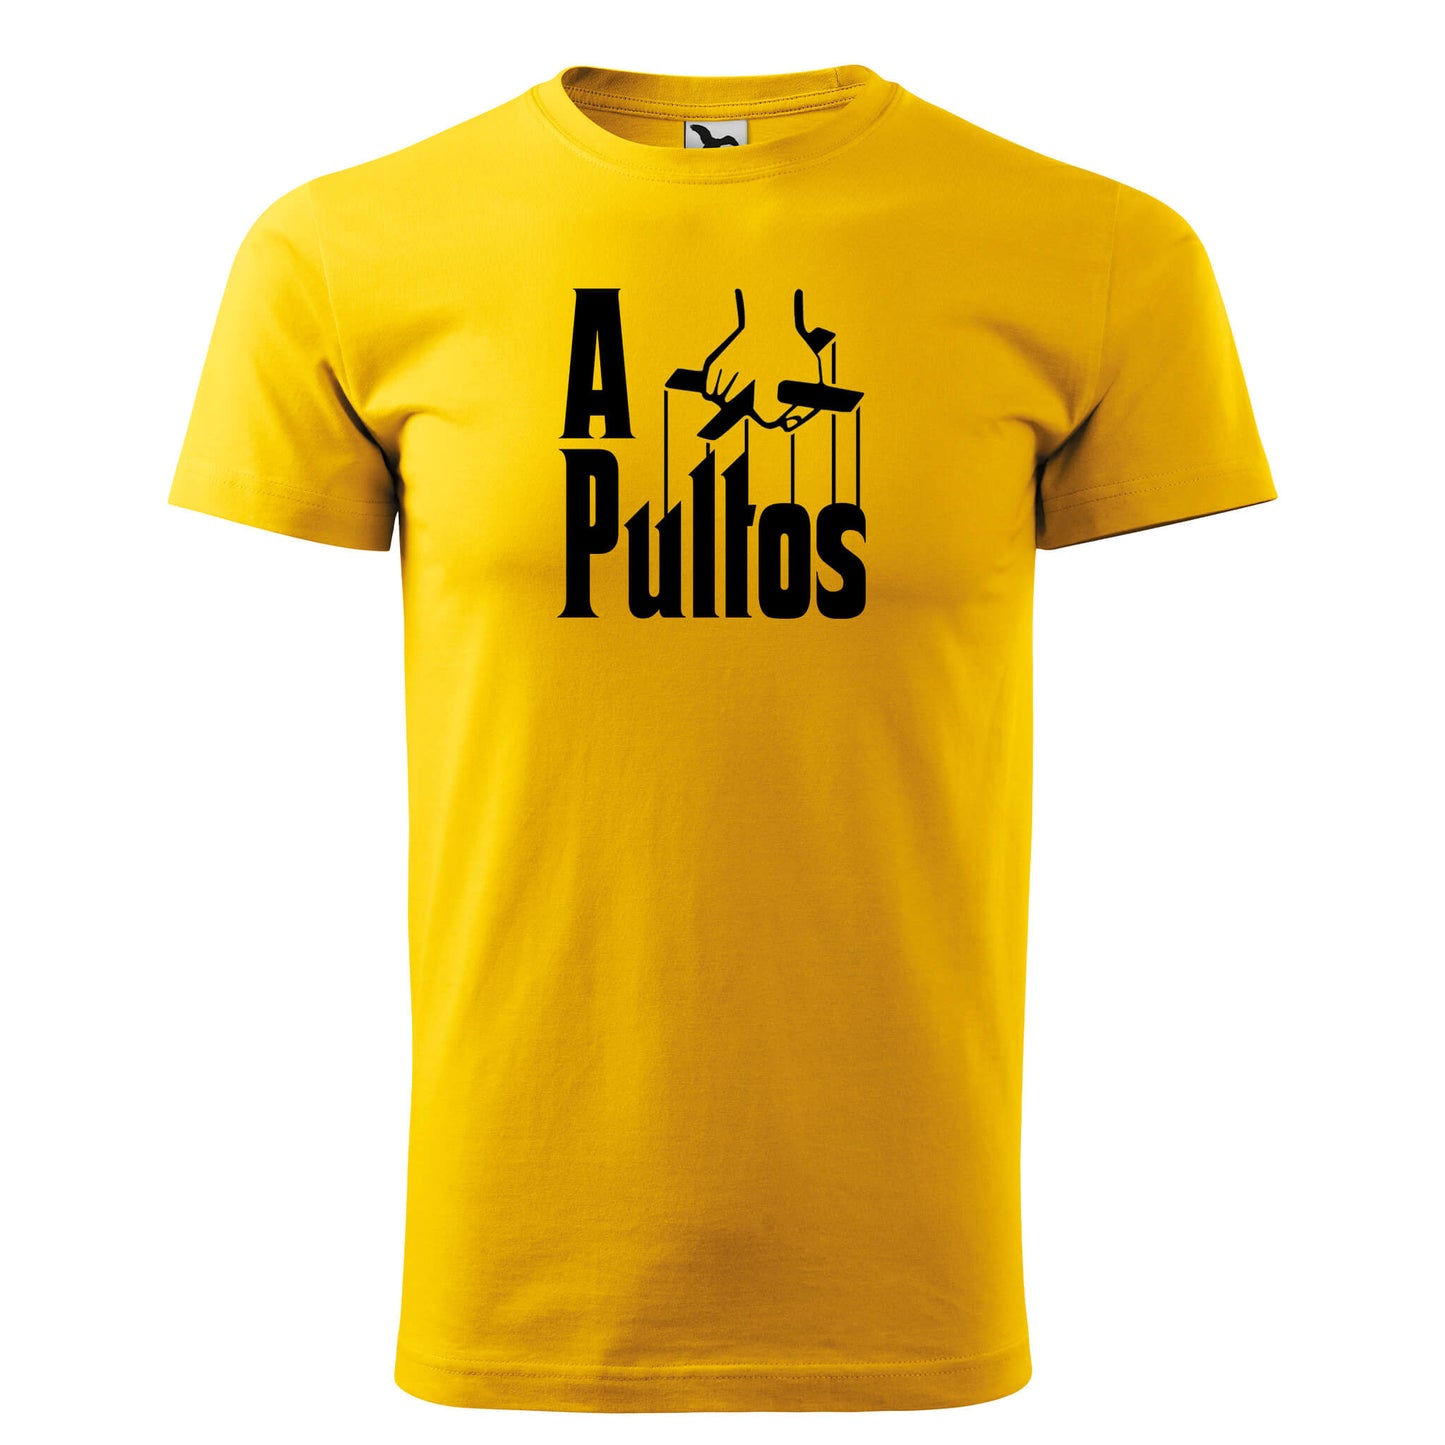 T-shirt - A pultos - rvdesignprint